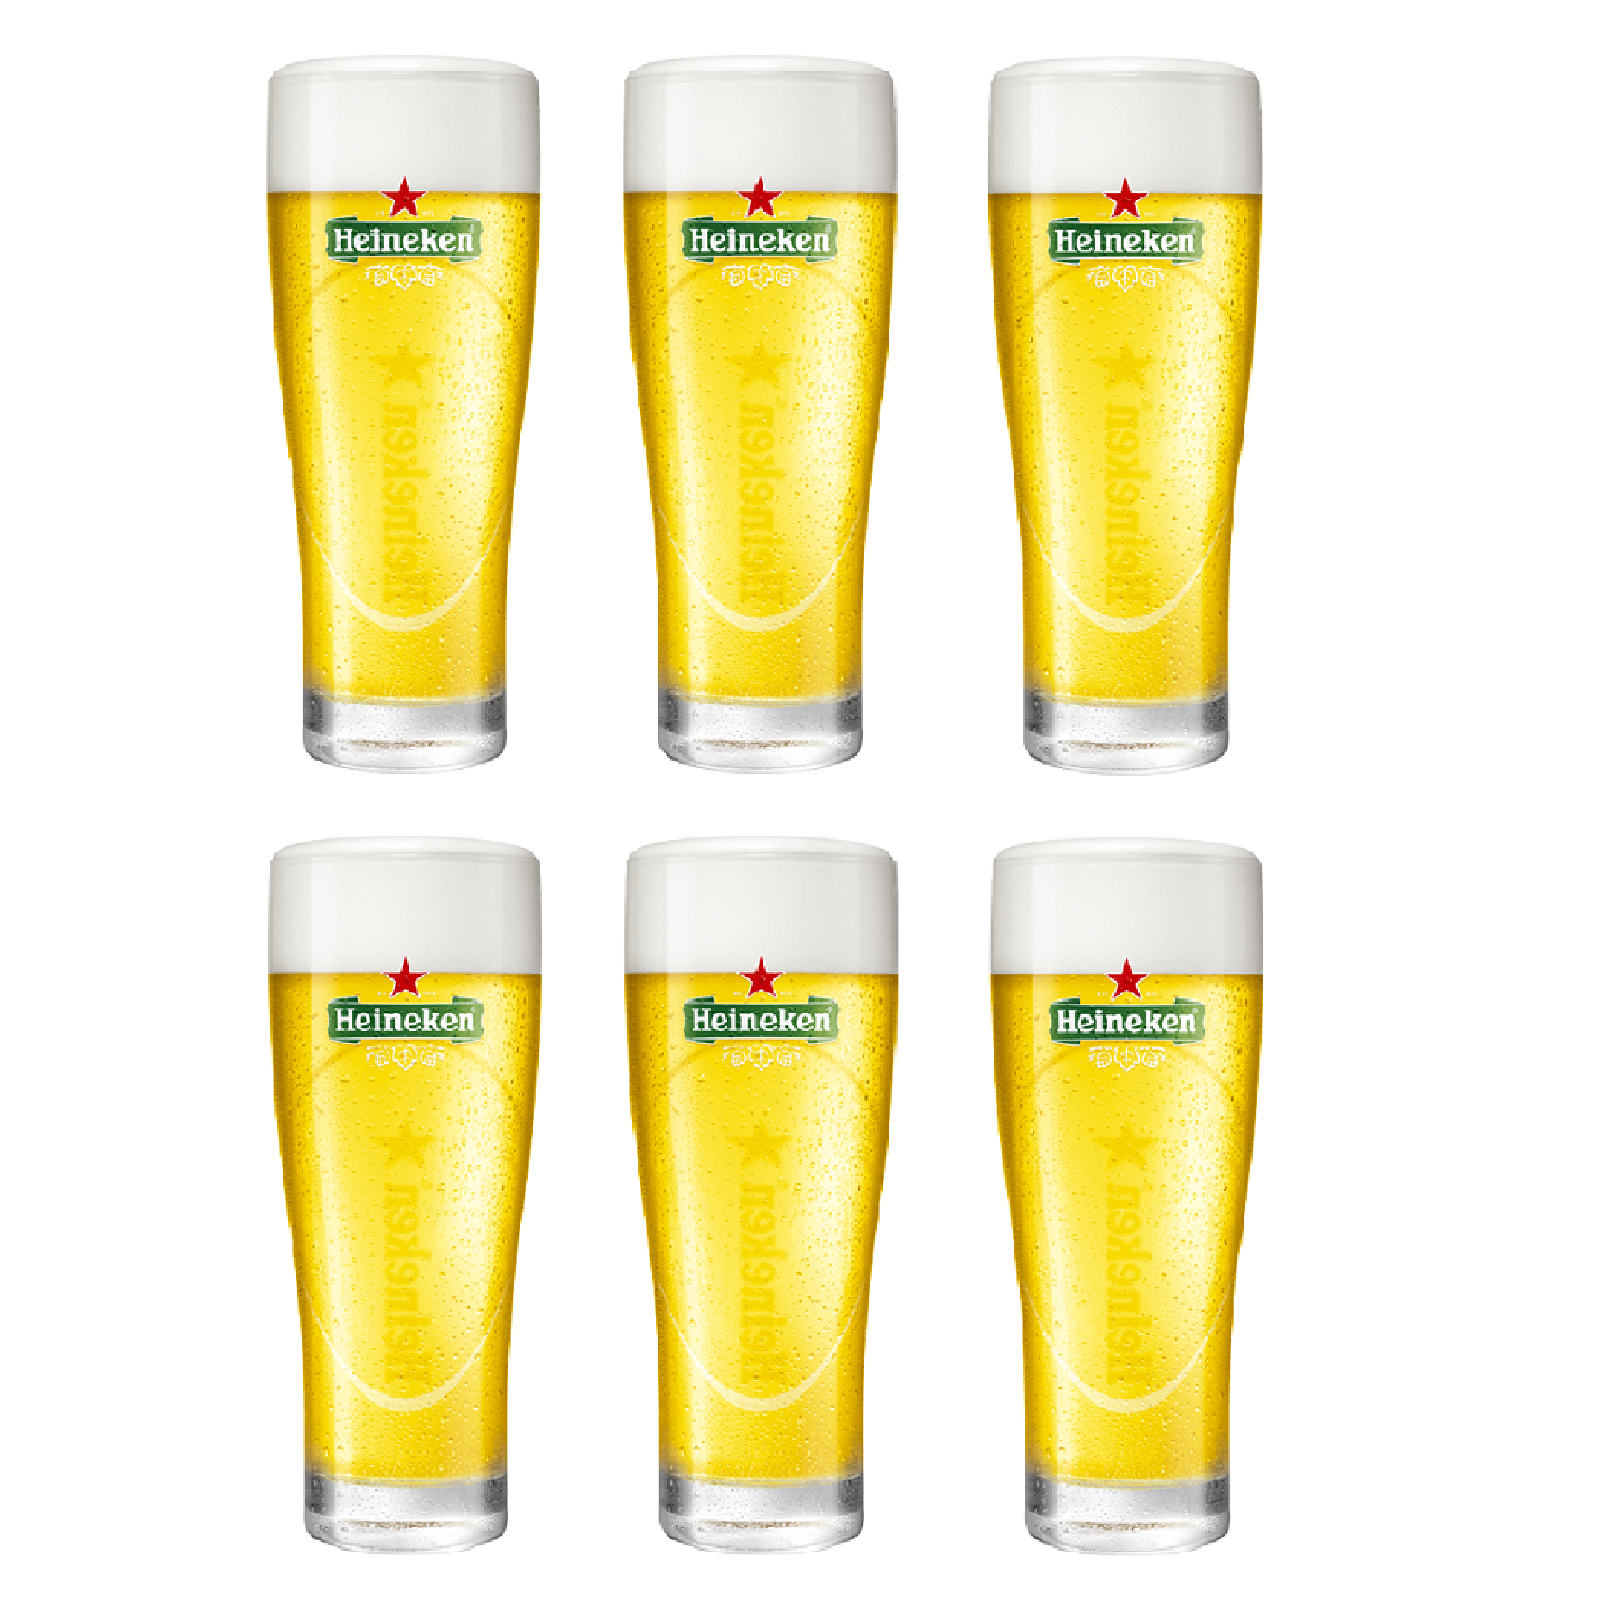 Ale Storen Nederigheid Heineken Bierglazen Ellipse Online Kopen? - Cookinglife!